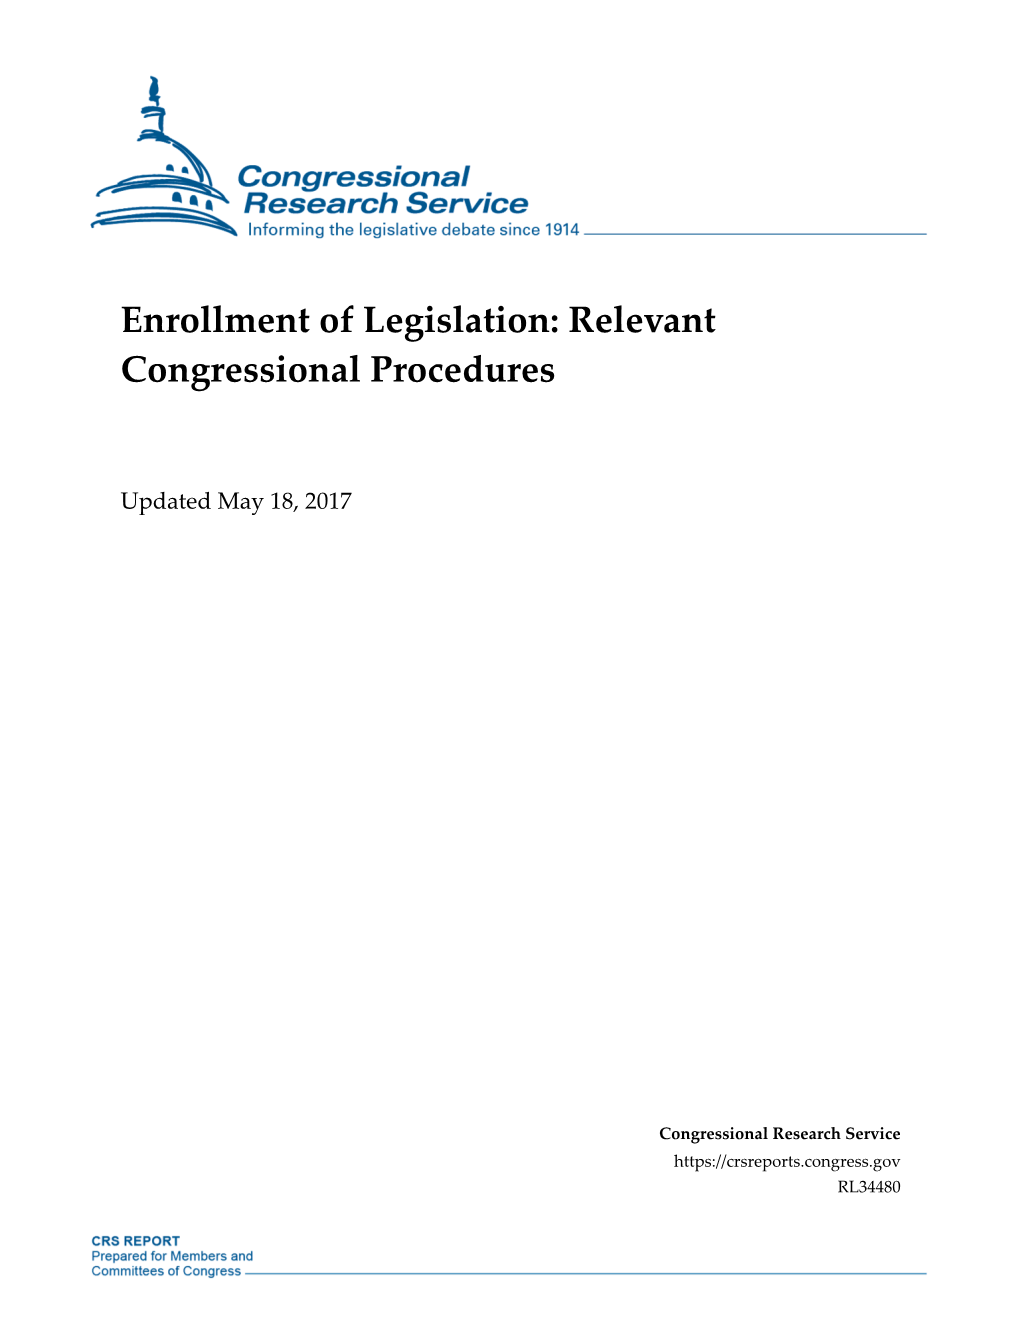 Enrollment of Legislation: Relevant Congressional Procedures